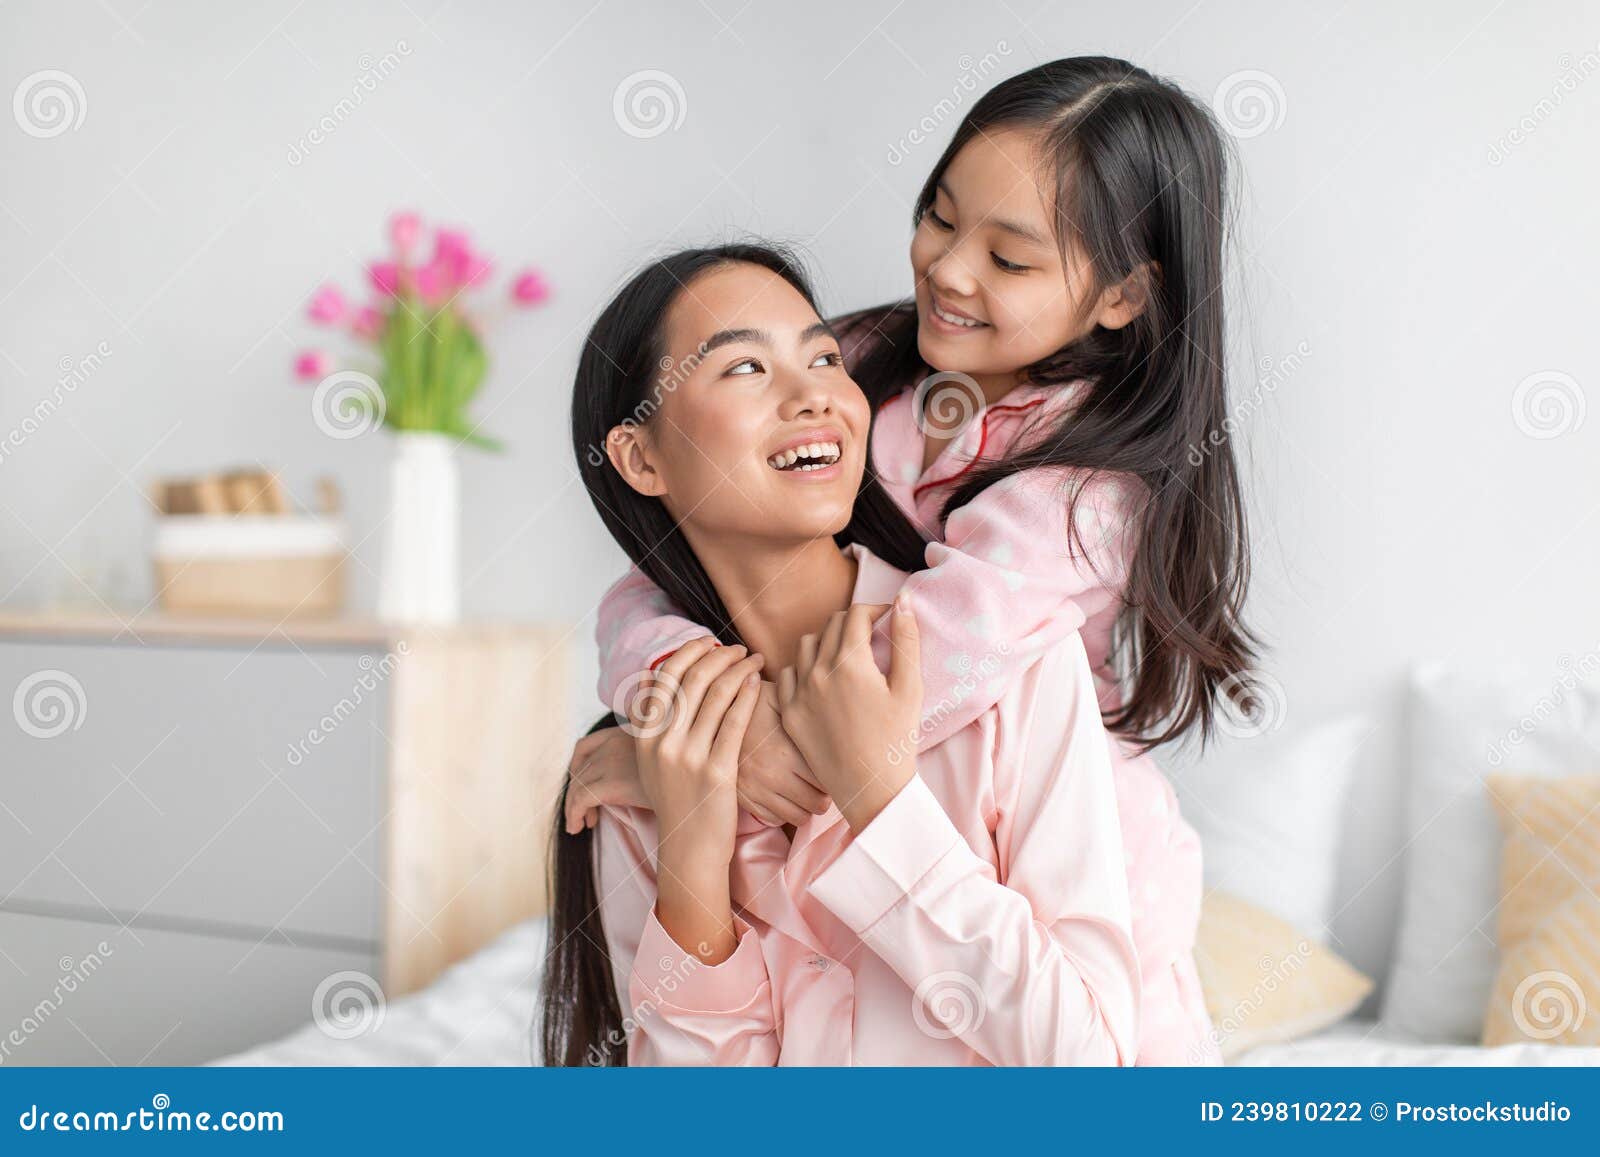 Mulher grávida de pijama com um espelho em um fundo branco meninas mãe